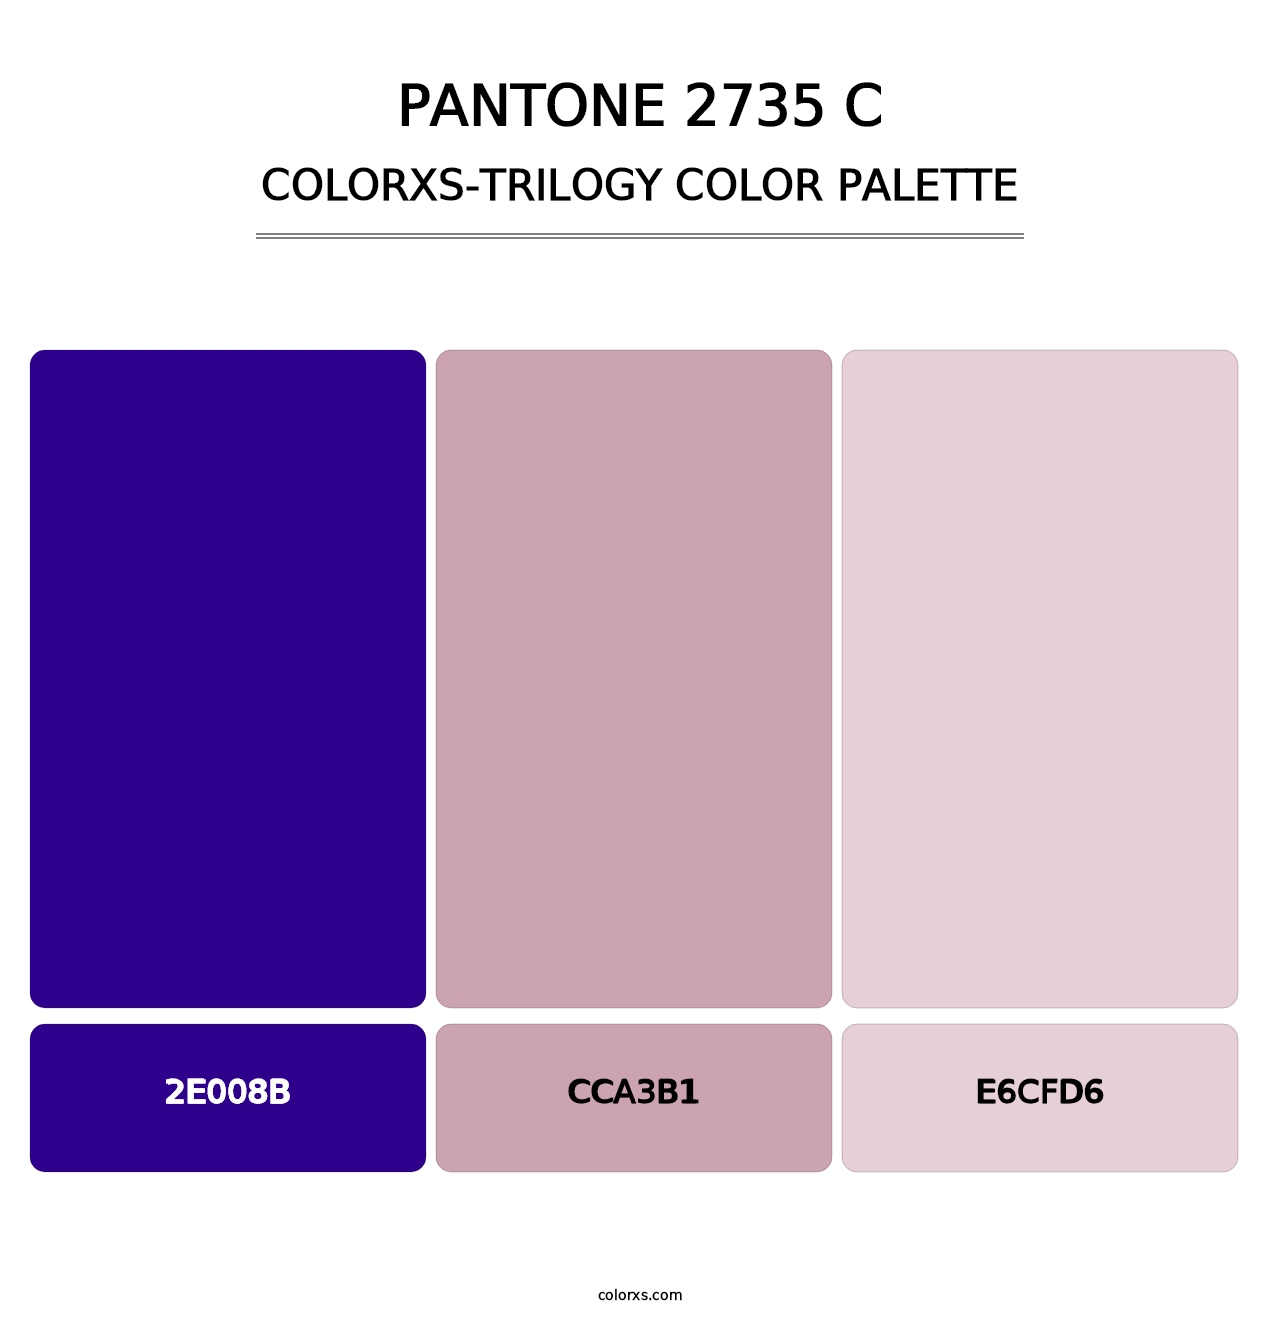 PANTONE 2735 C - Colorxs Trilogy Palette